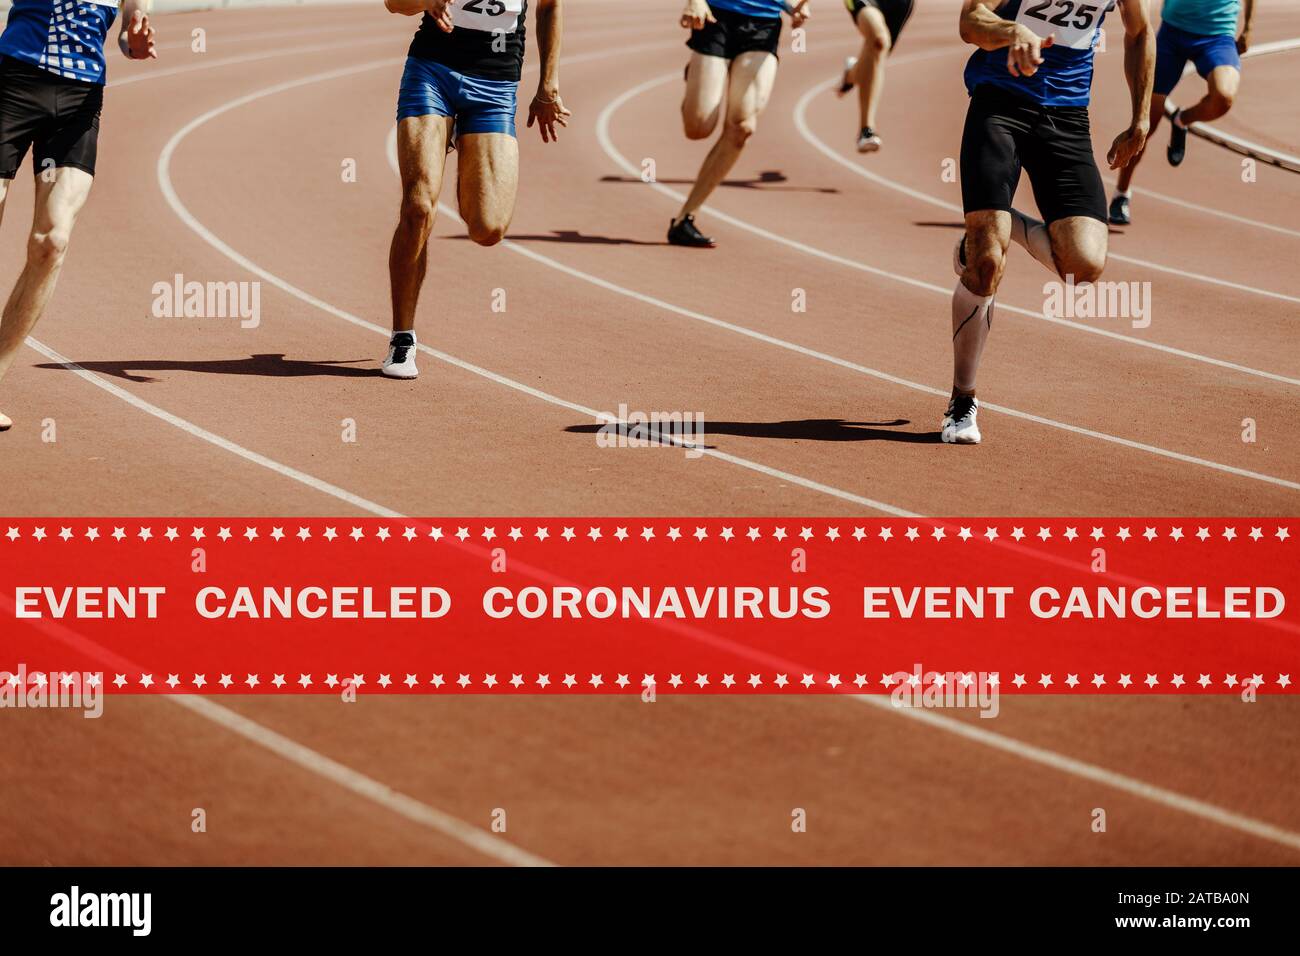 advertencia: el evento de cinta canceló el coronavirus en los atletas de atletismo en segundo plano Foto de stock